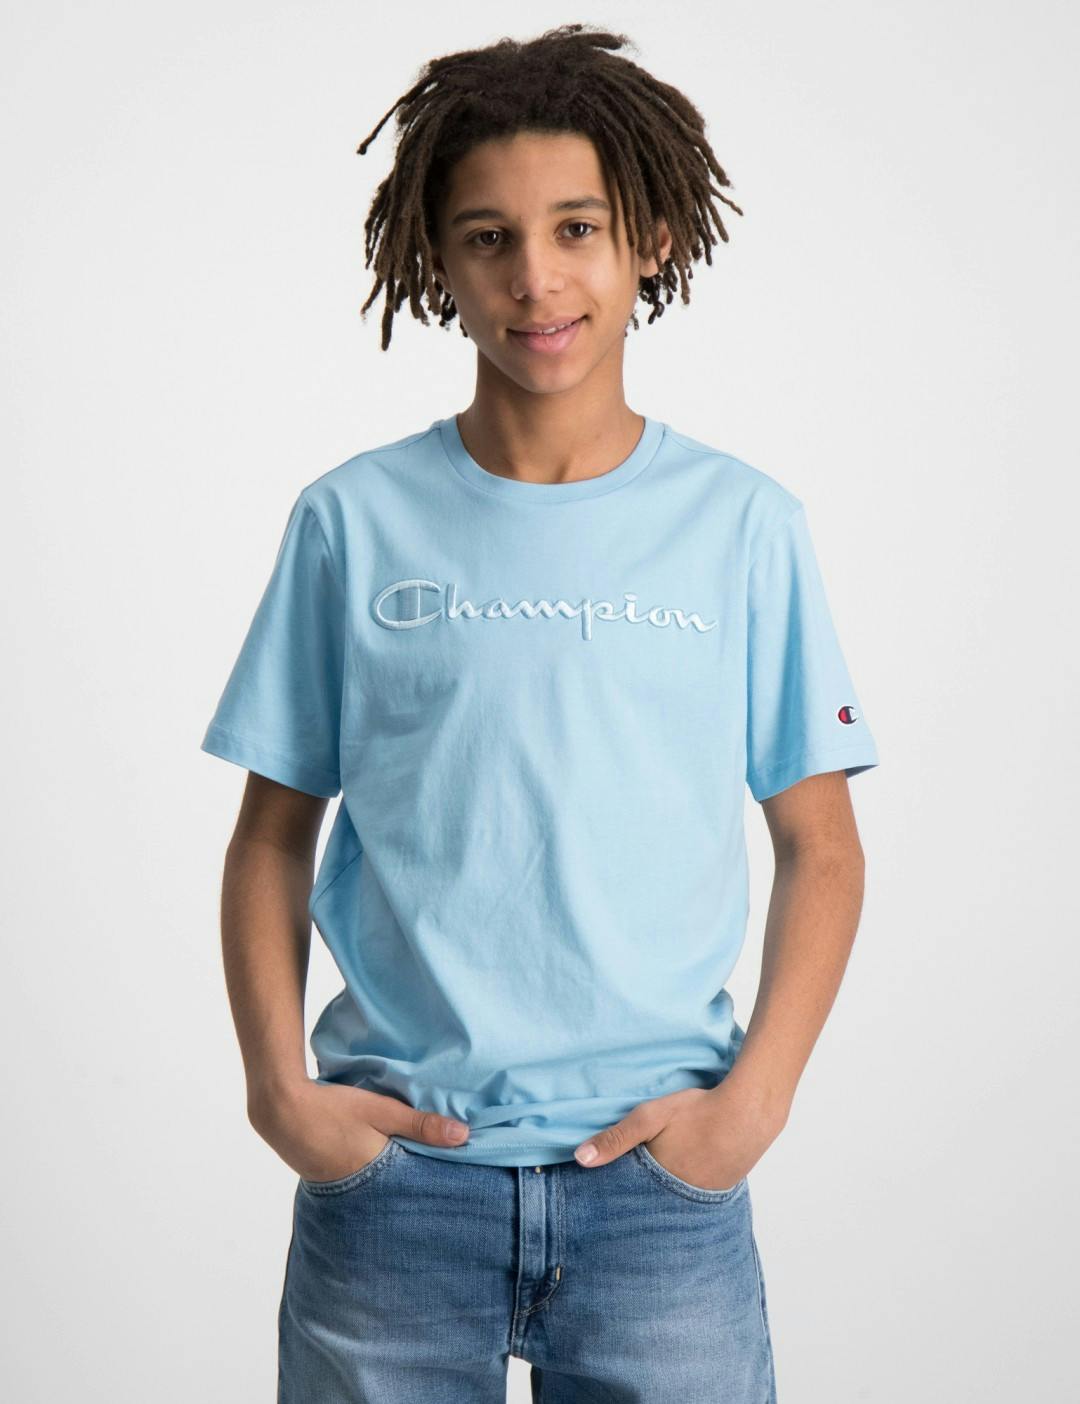 tilbede Alfabet Regulering Blå Crewneck T-Shirt til Dreng | Kids Brand Store